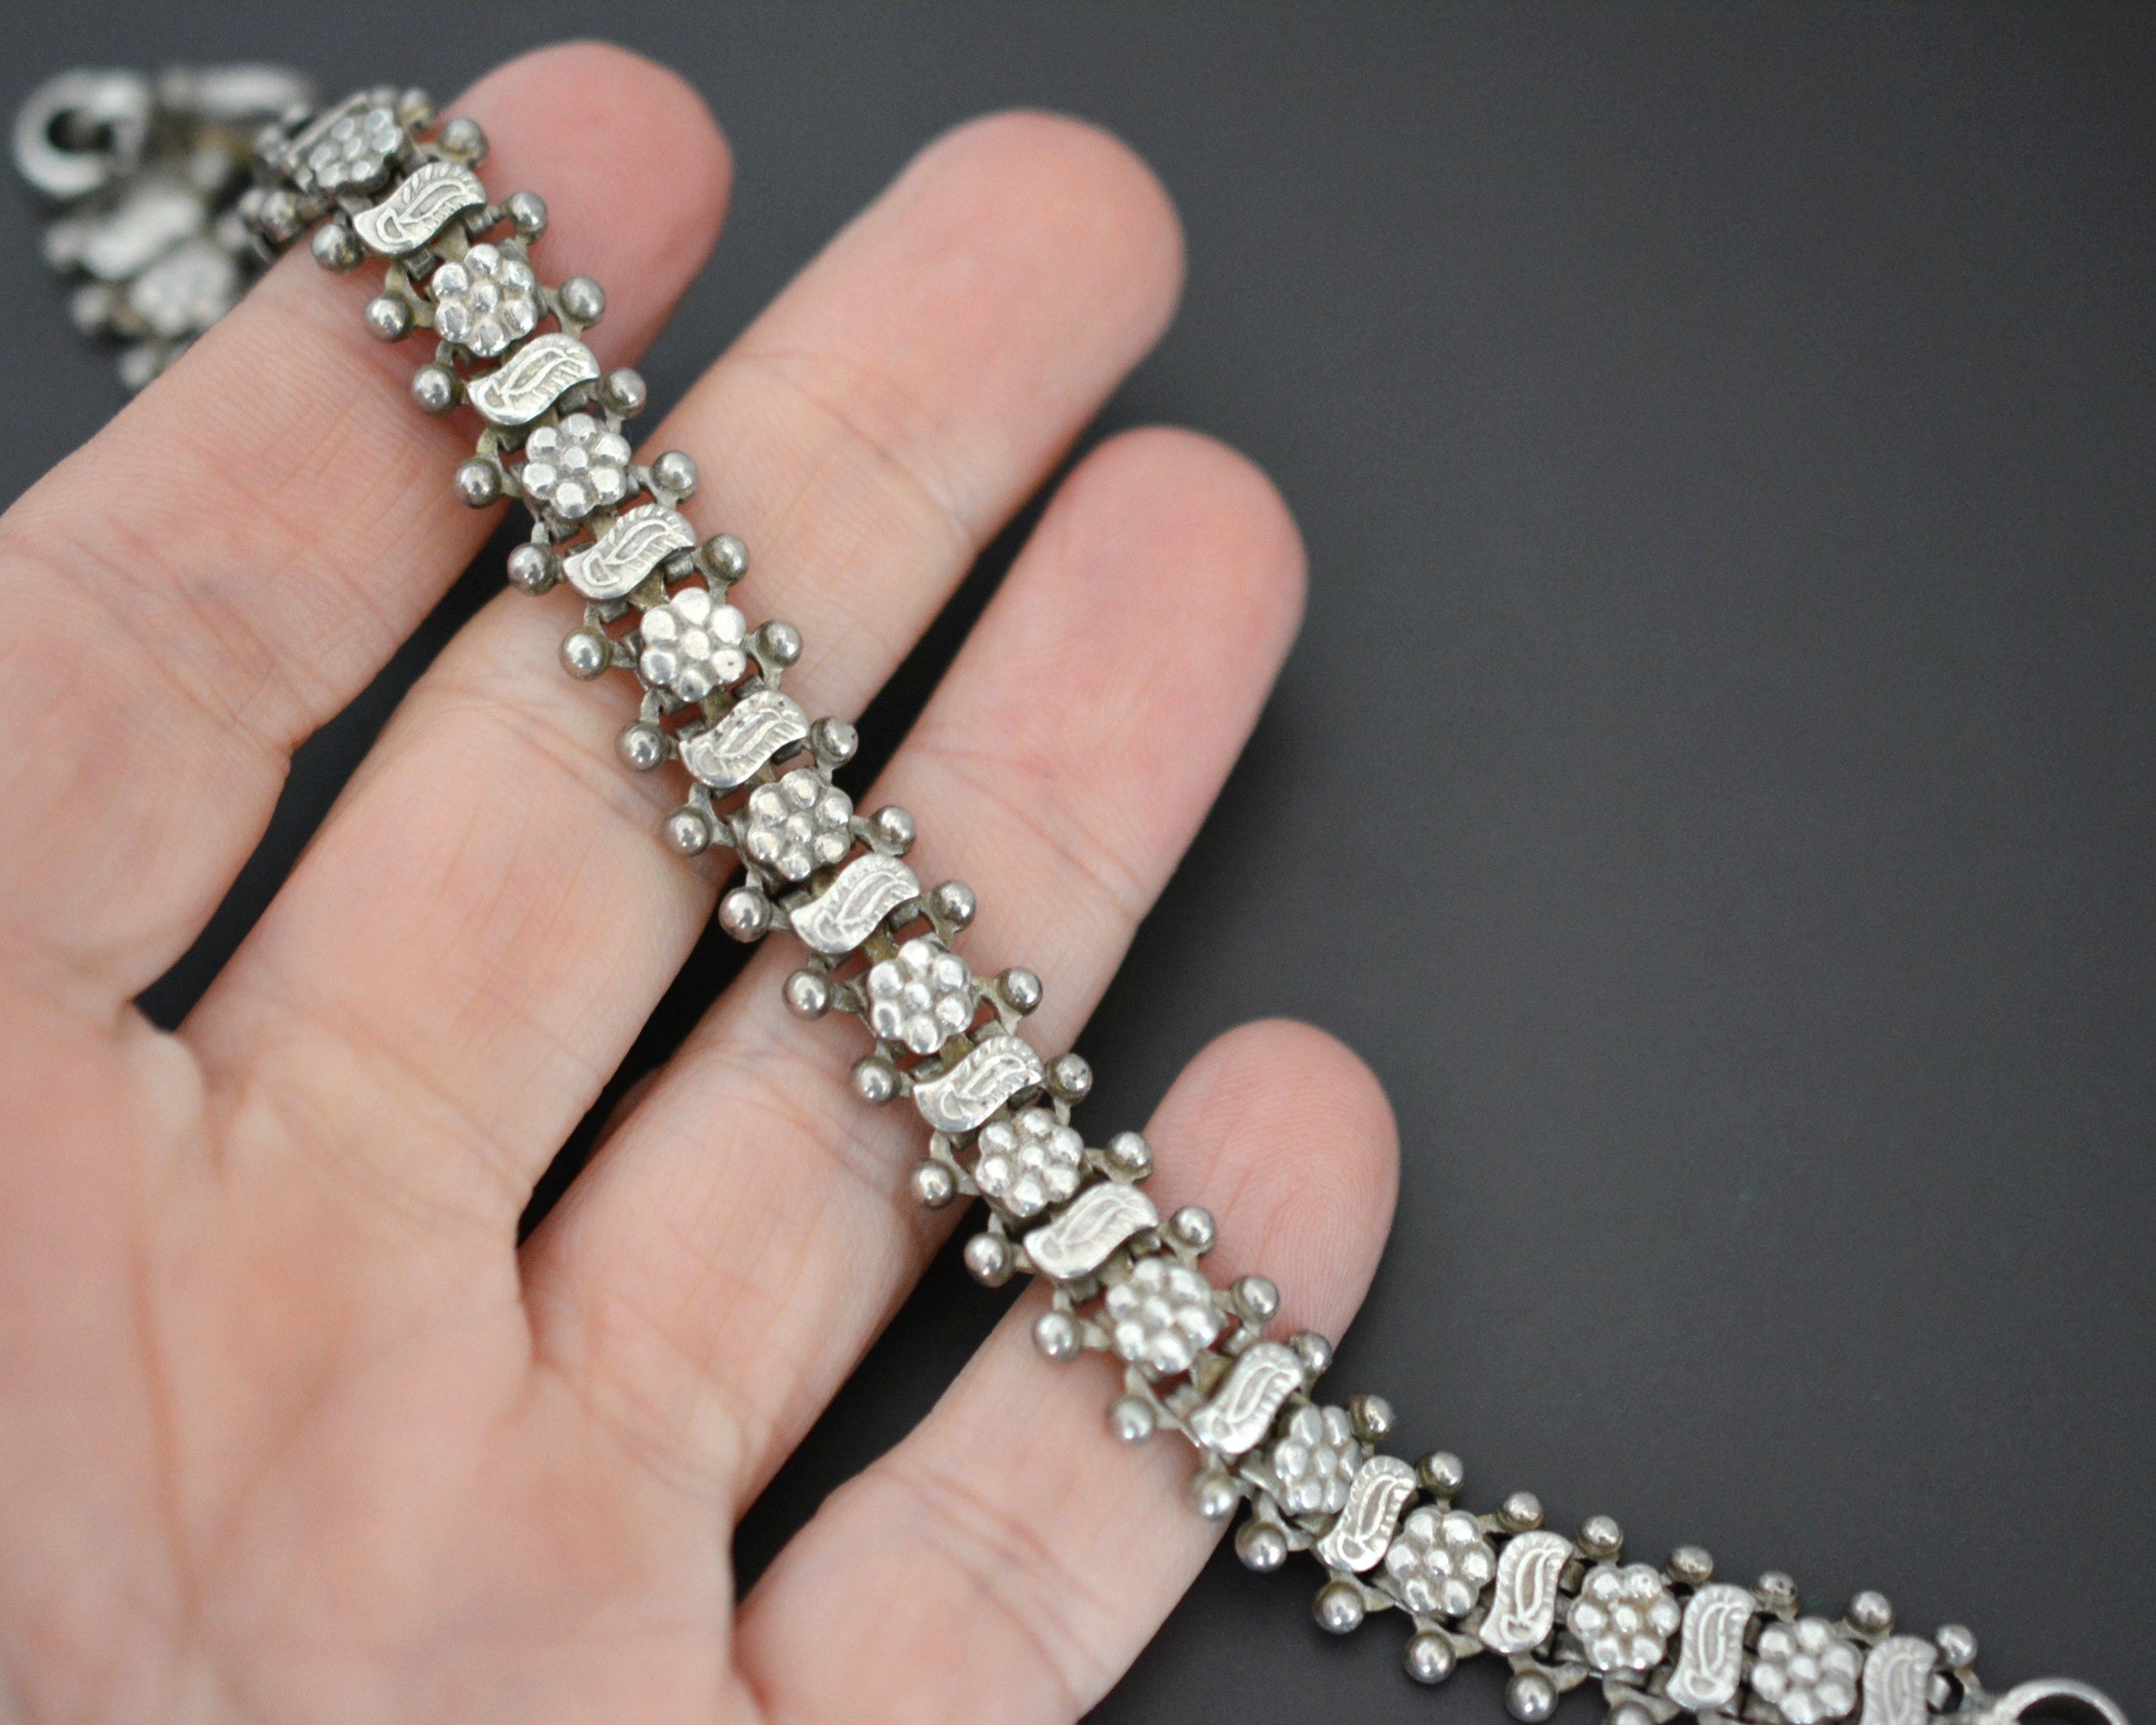 Rajasthani Silver Flower Link Bracelet